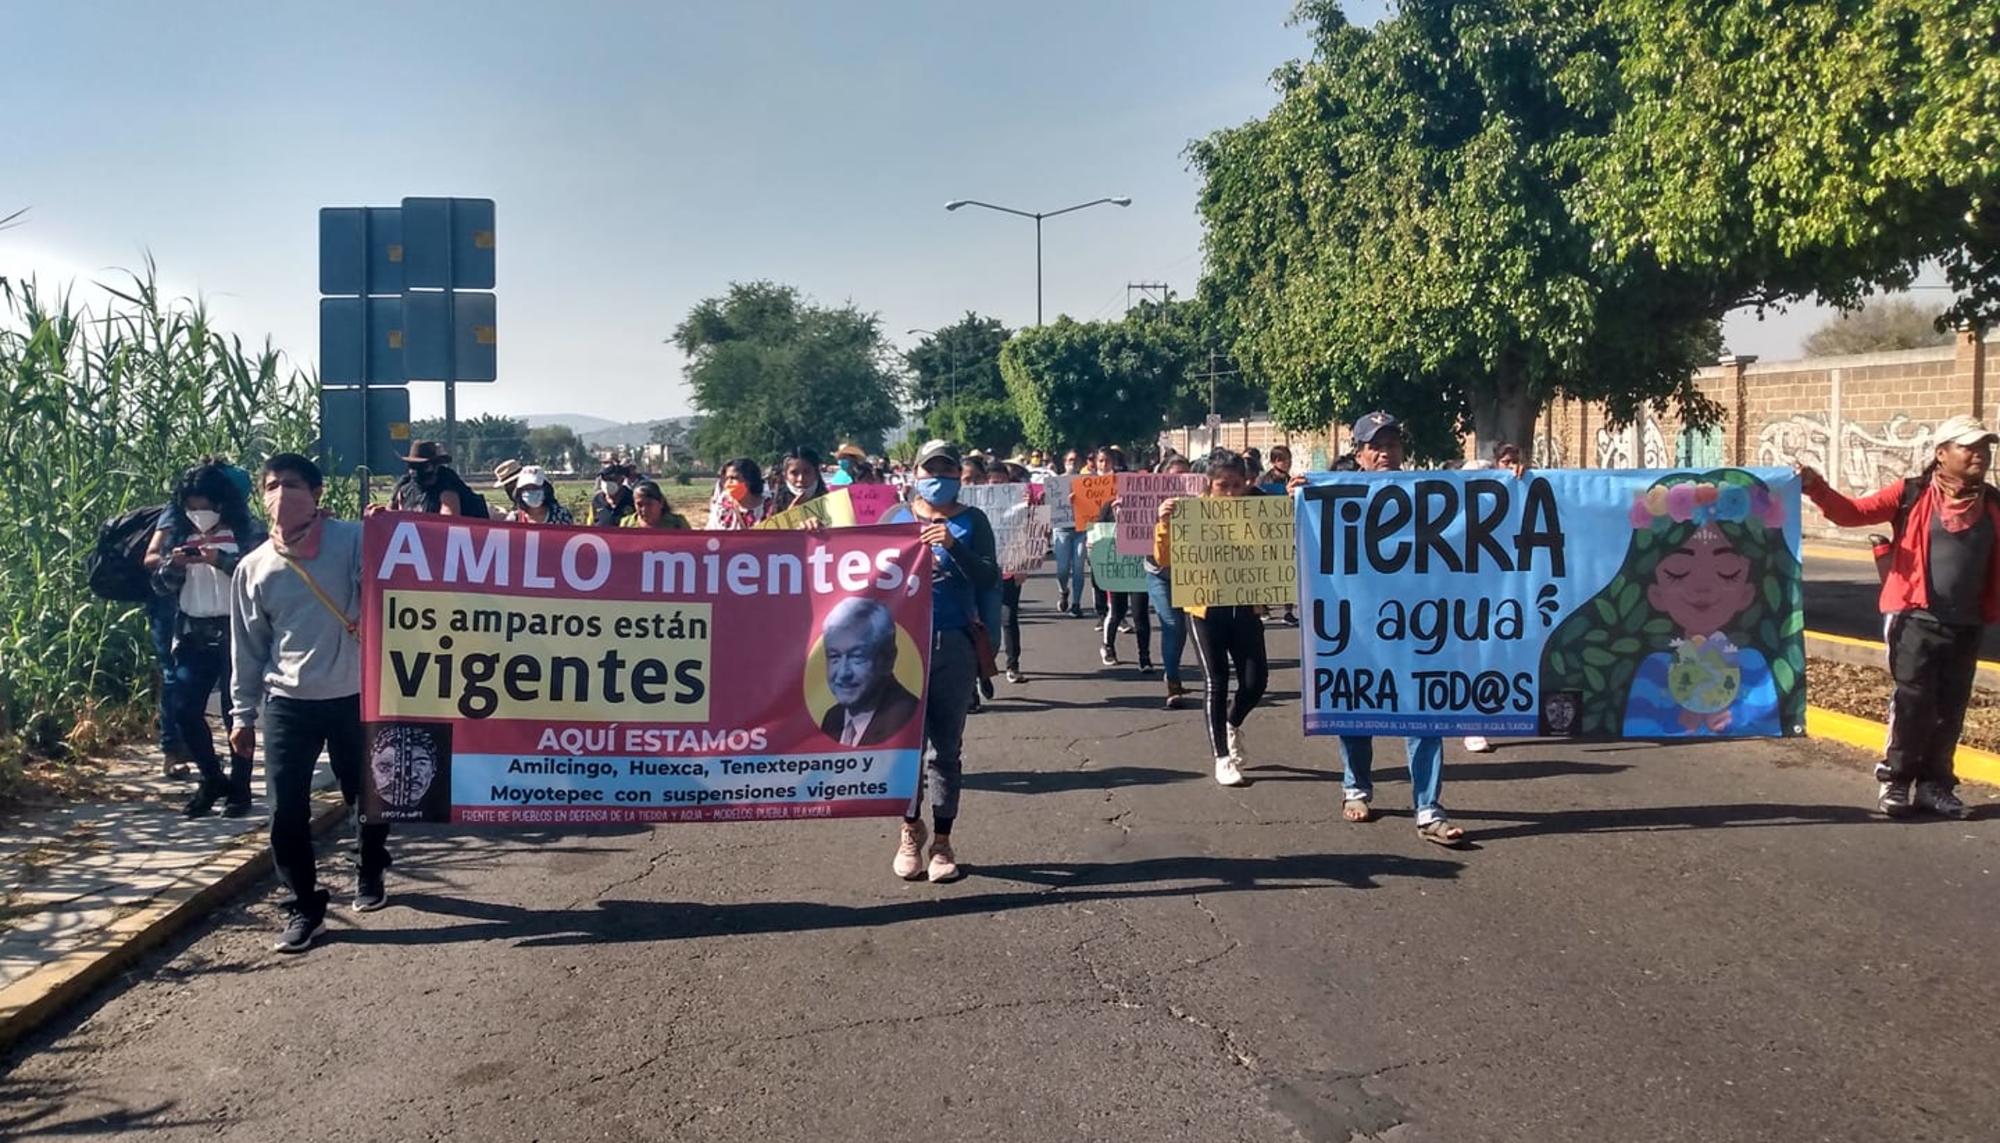 Marcha contra Proyecto Integral Morelos 1 - Radio Amilcingo